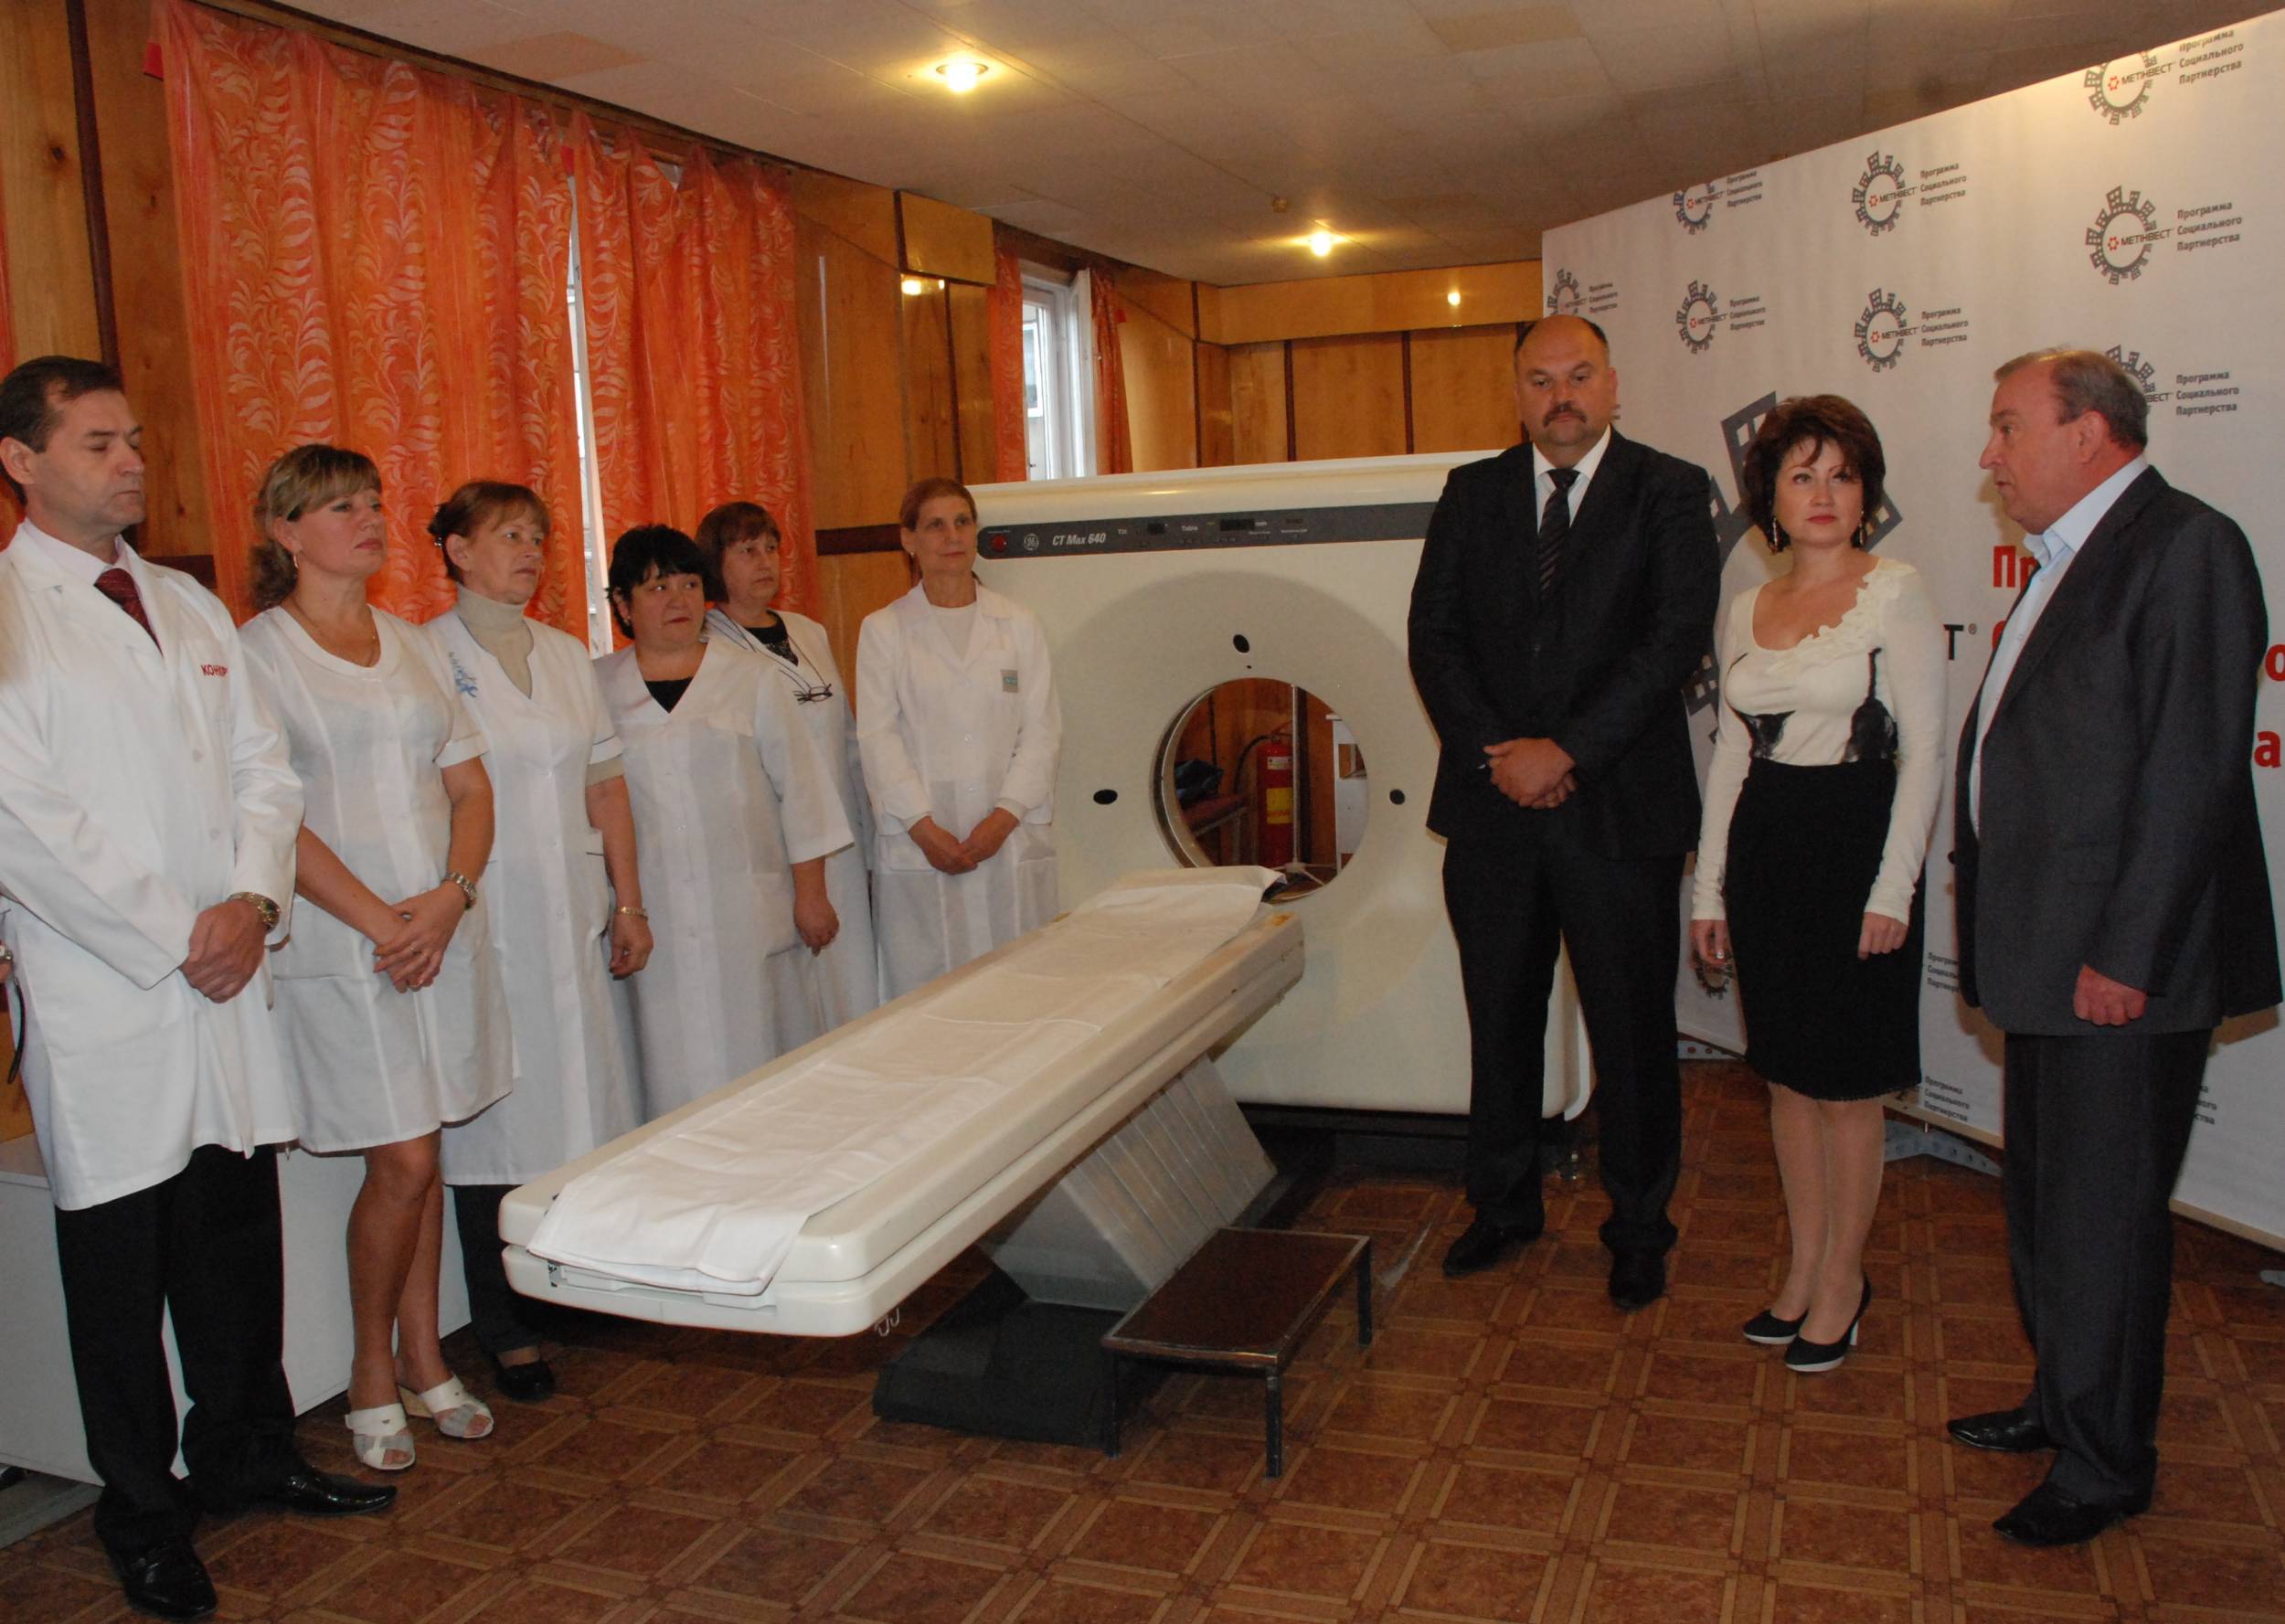 Метинвест профинансировал ремонт томографа для больницы в Енакиеве